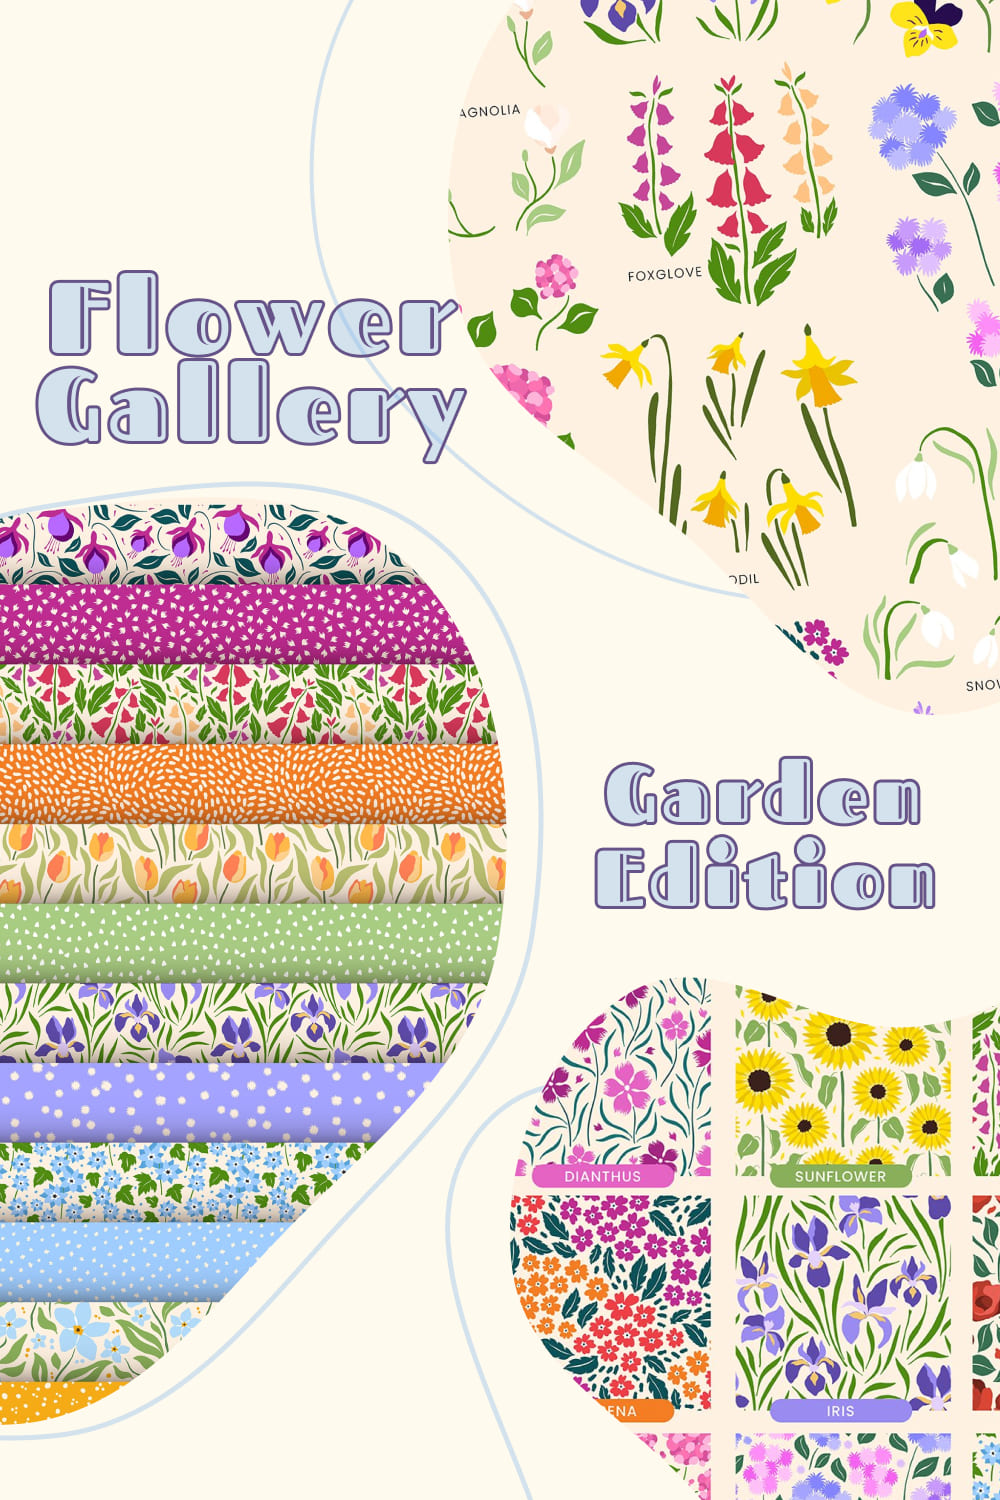 Flower Gallery Garden Edition pinterest image.